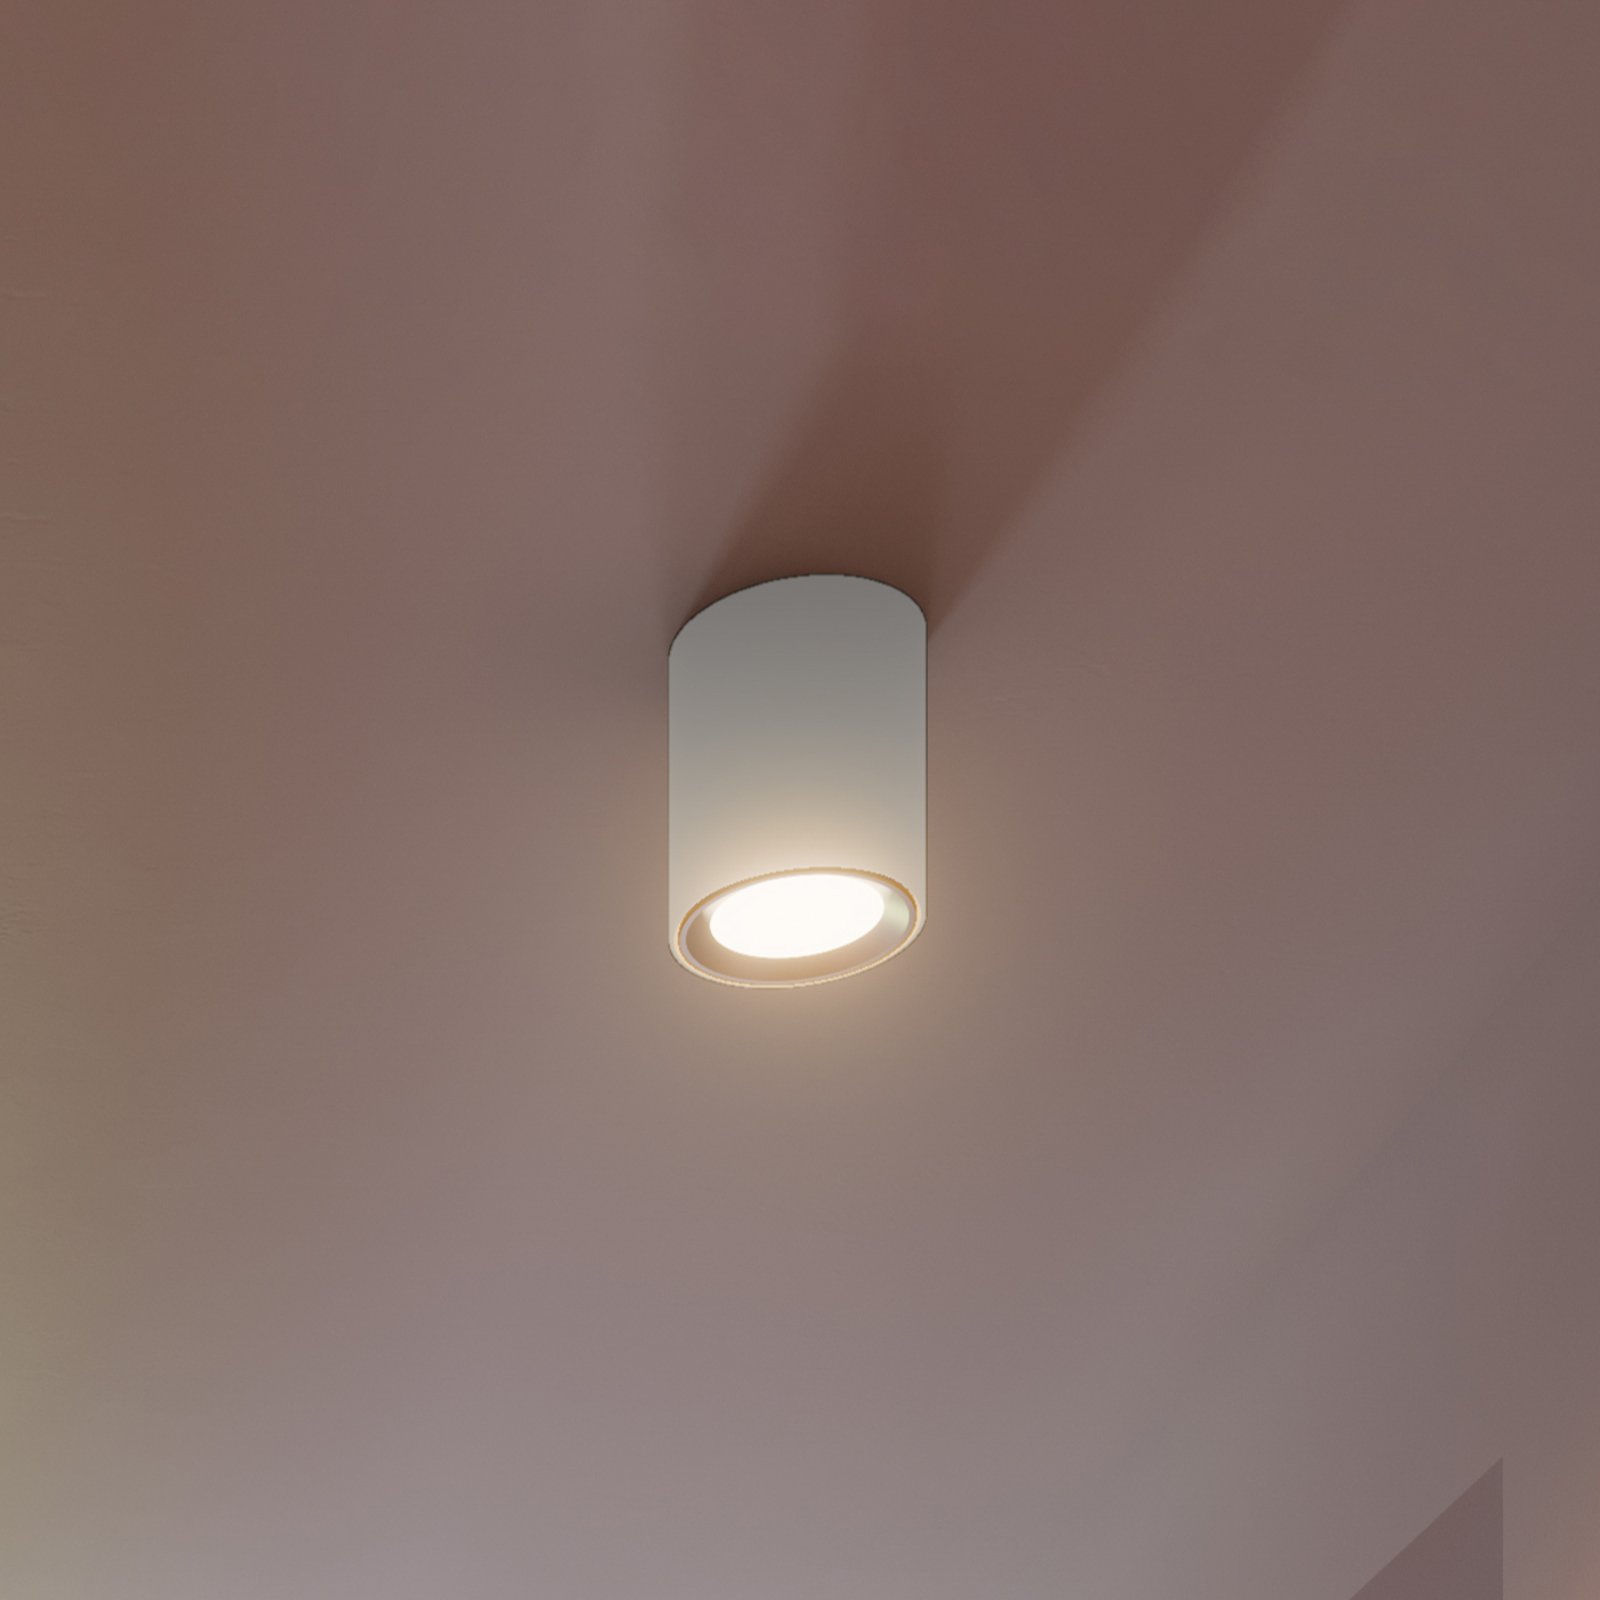 LED ceiling spotlight Landon Smart, white, H 14 cm